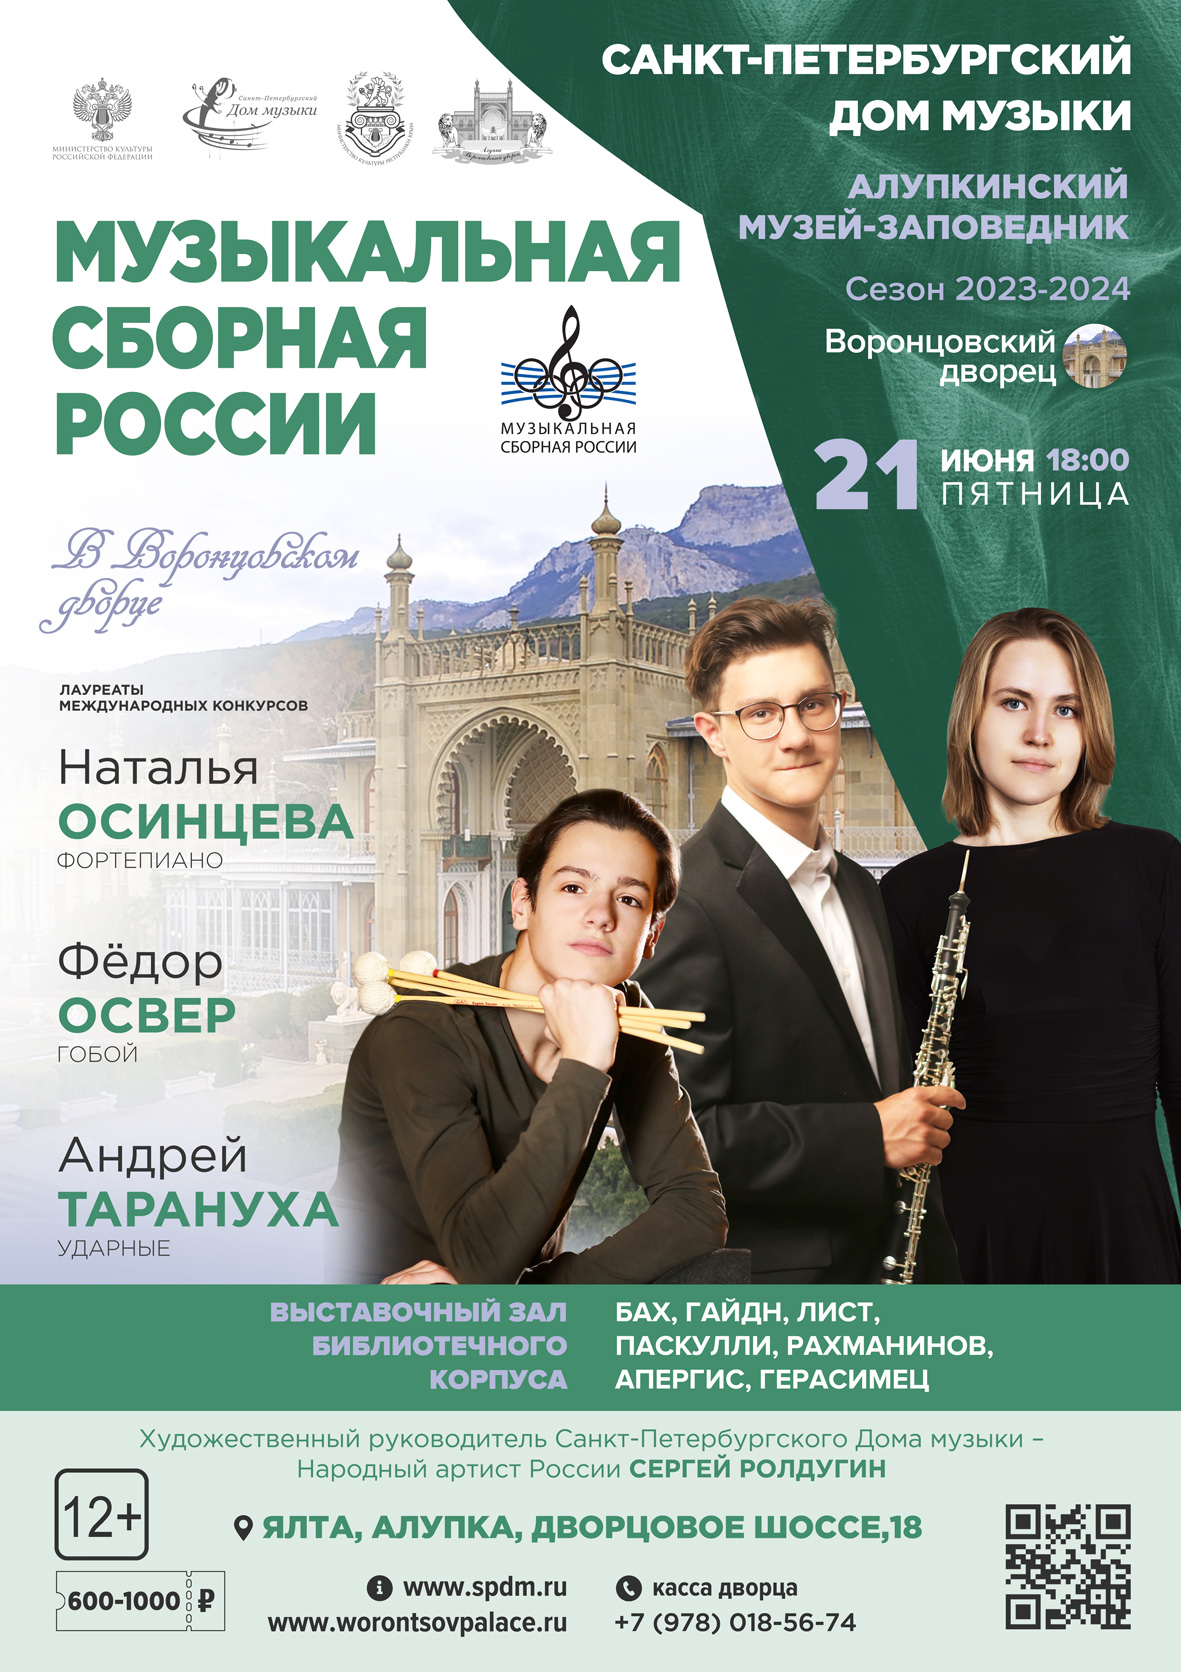 Подробнее о статье 21 июня с.г. «Музыкальная сборная России в Воронцовском дворце»